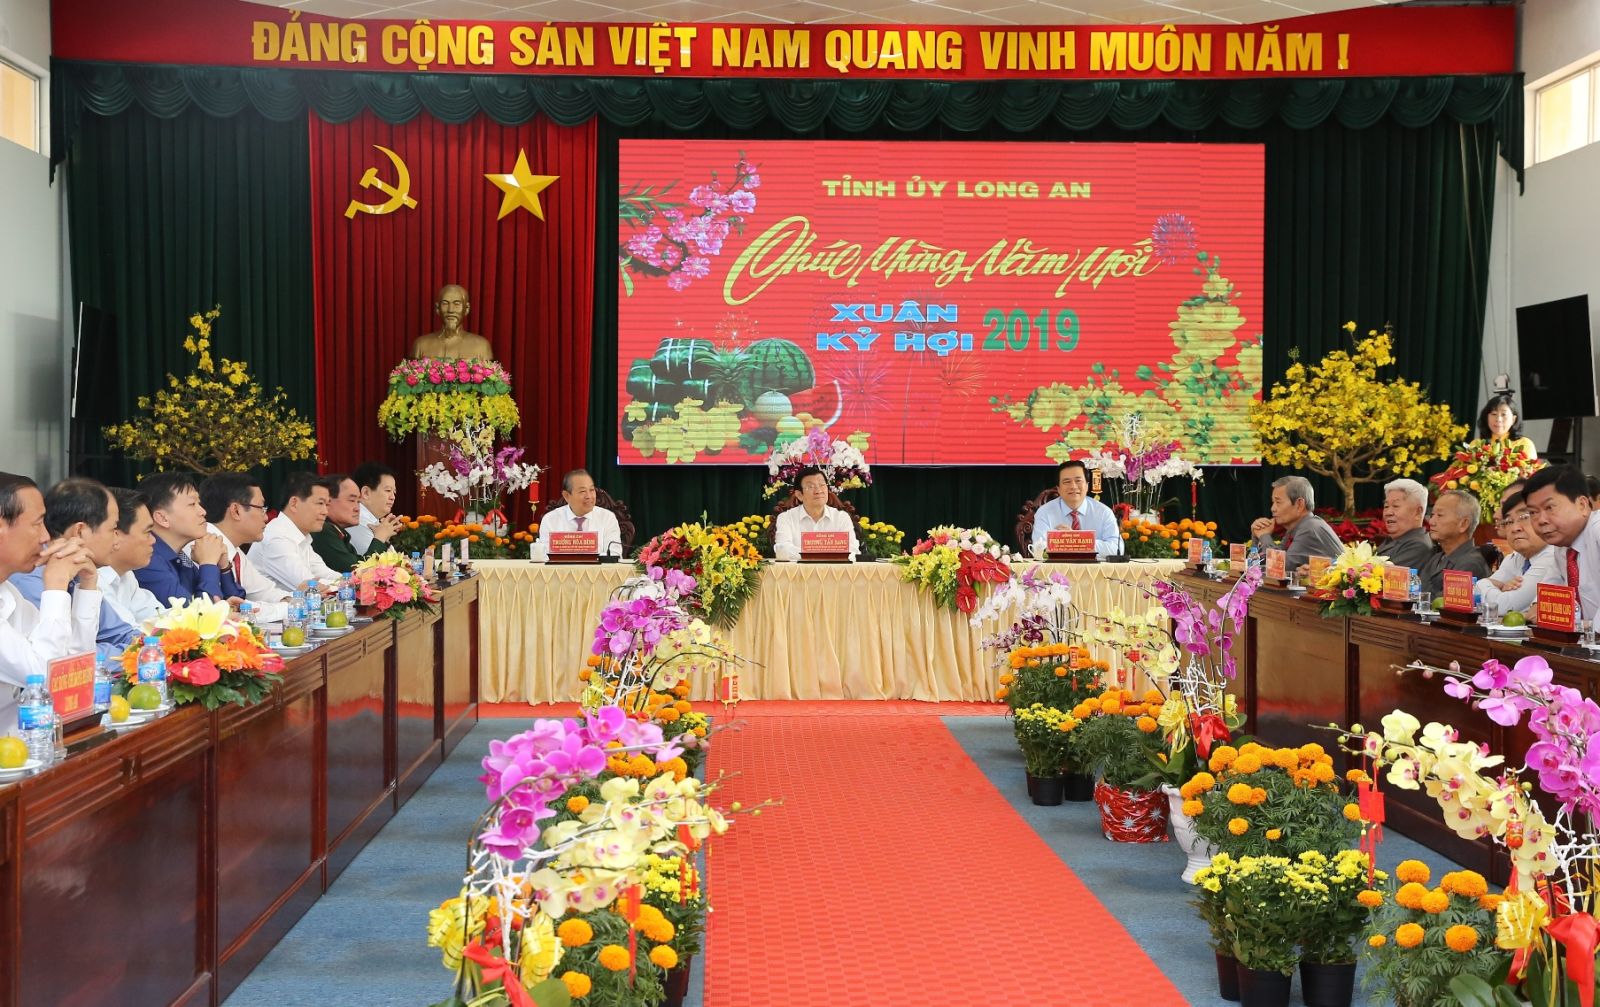 Phó Thủ tướng Thường trực Chính phủ Trương Hòa Bình dự buổi gặp mặt do Tỉnh ủy Long An tổ chức ngày 3/2. Ảnh: VGP/Mạnh Hùng